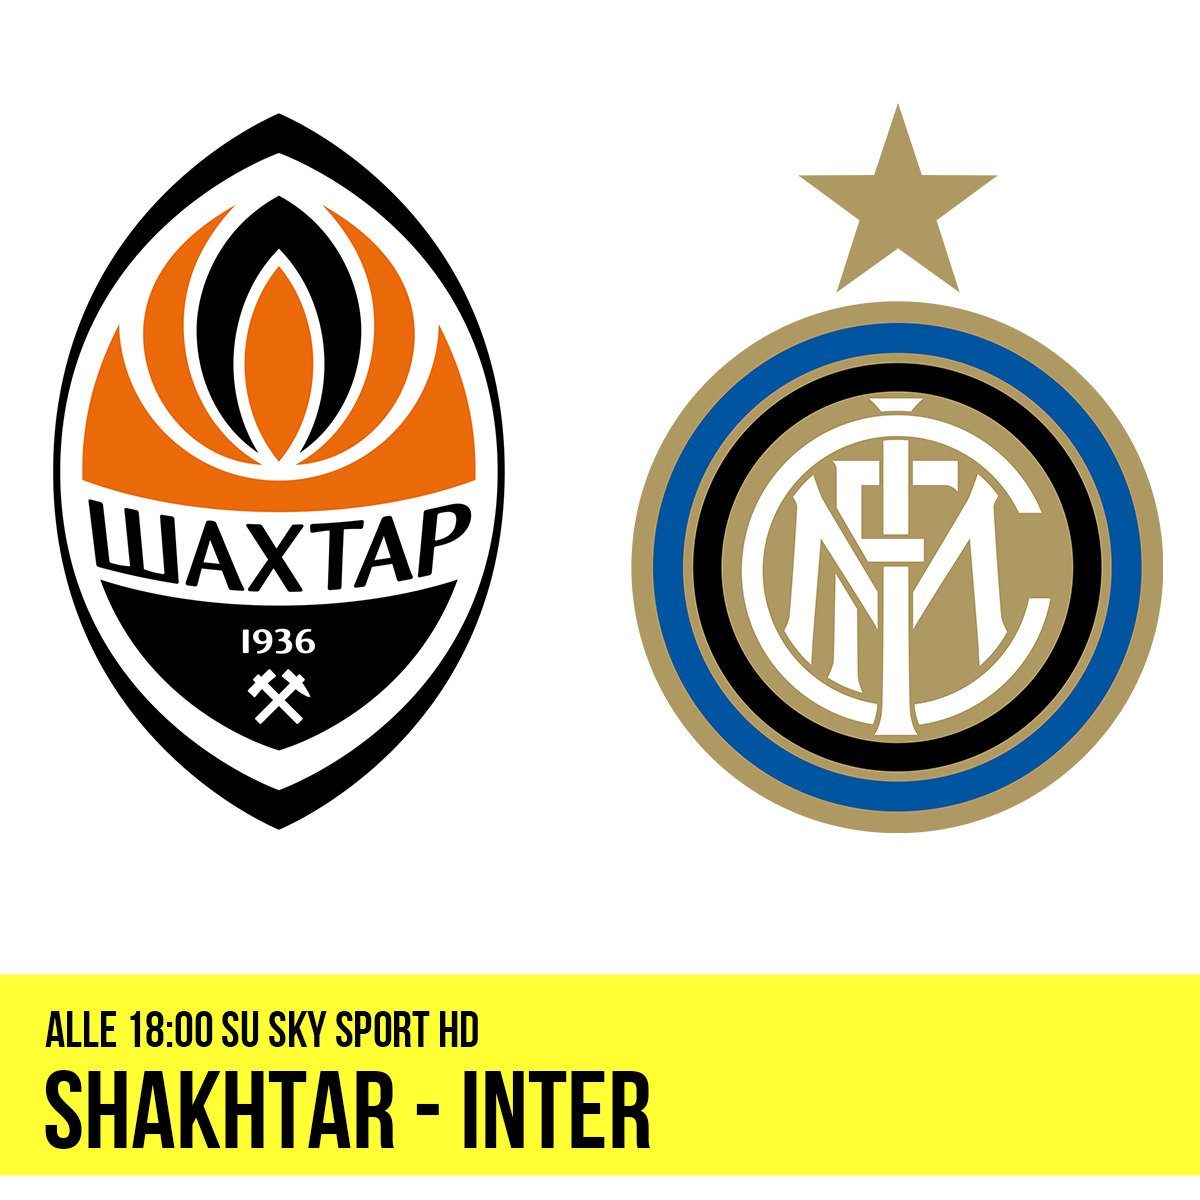 Shakhtar - Inter